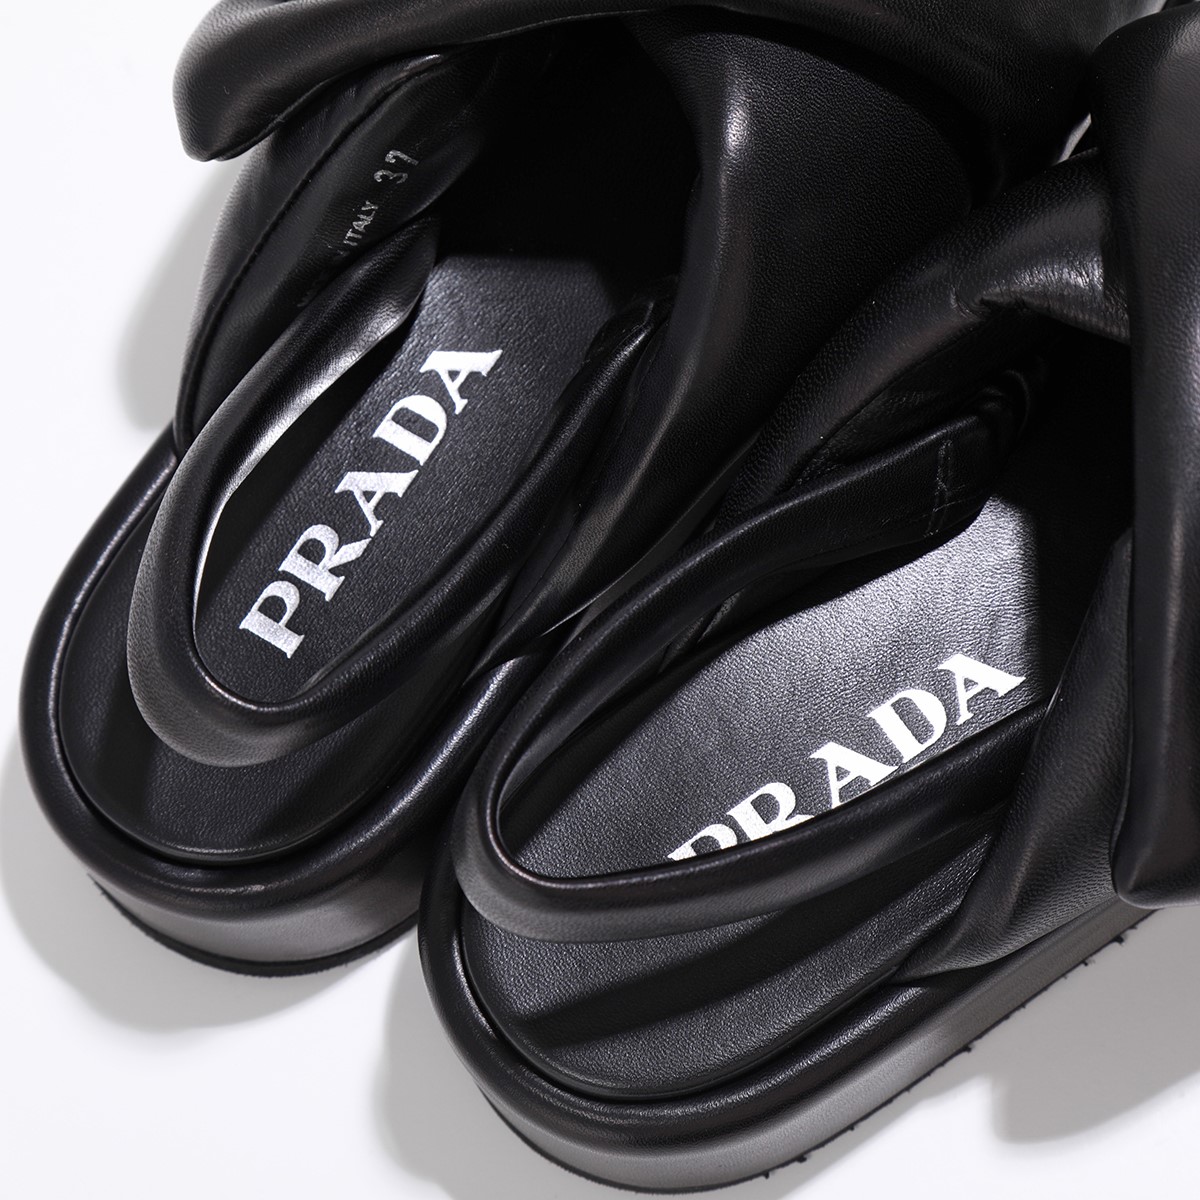 PRADA プラダ サンダル 1XZ758 2DL8 レディース ソフト パデッドナッパレザー ウェッジサンダル トライアングルロゴ シューズ 靴  F0002/NERO | インポートセレクト musee